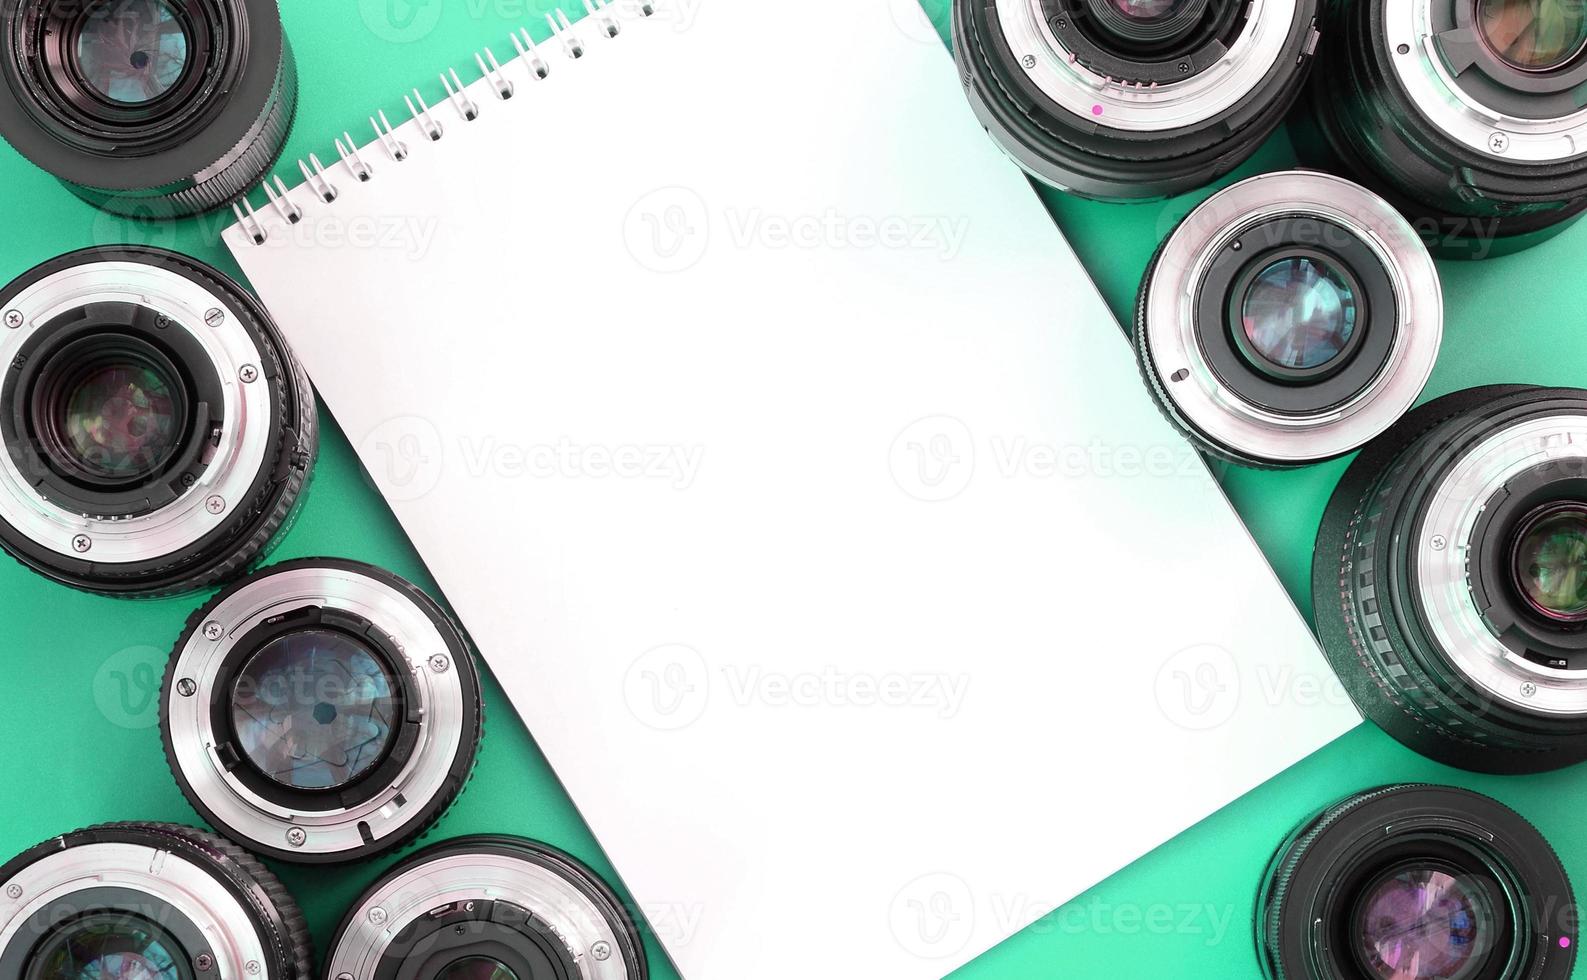 várias lentes fotográficas e caderno branco repousam sobre um fundo turquesa brilhante. espaço de cópia foto